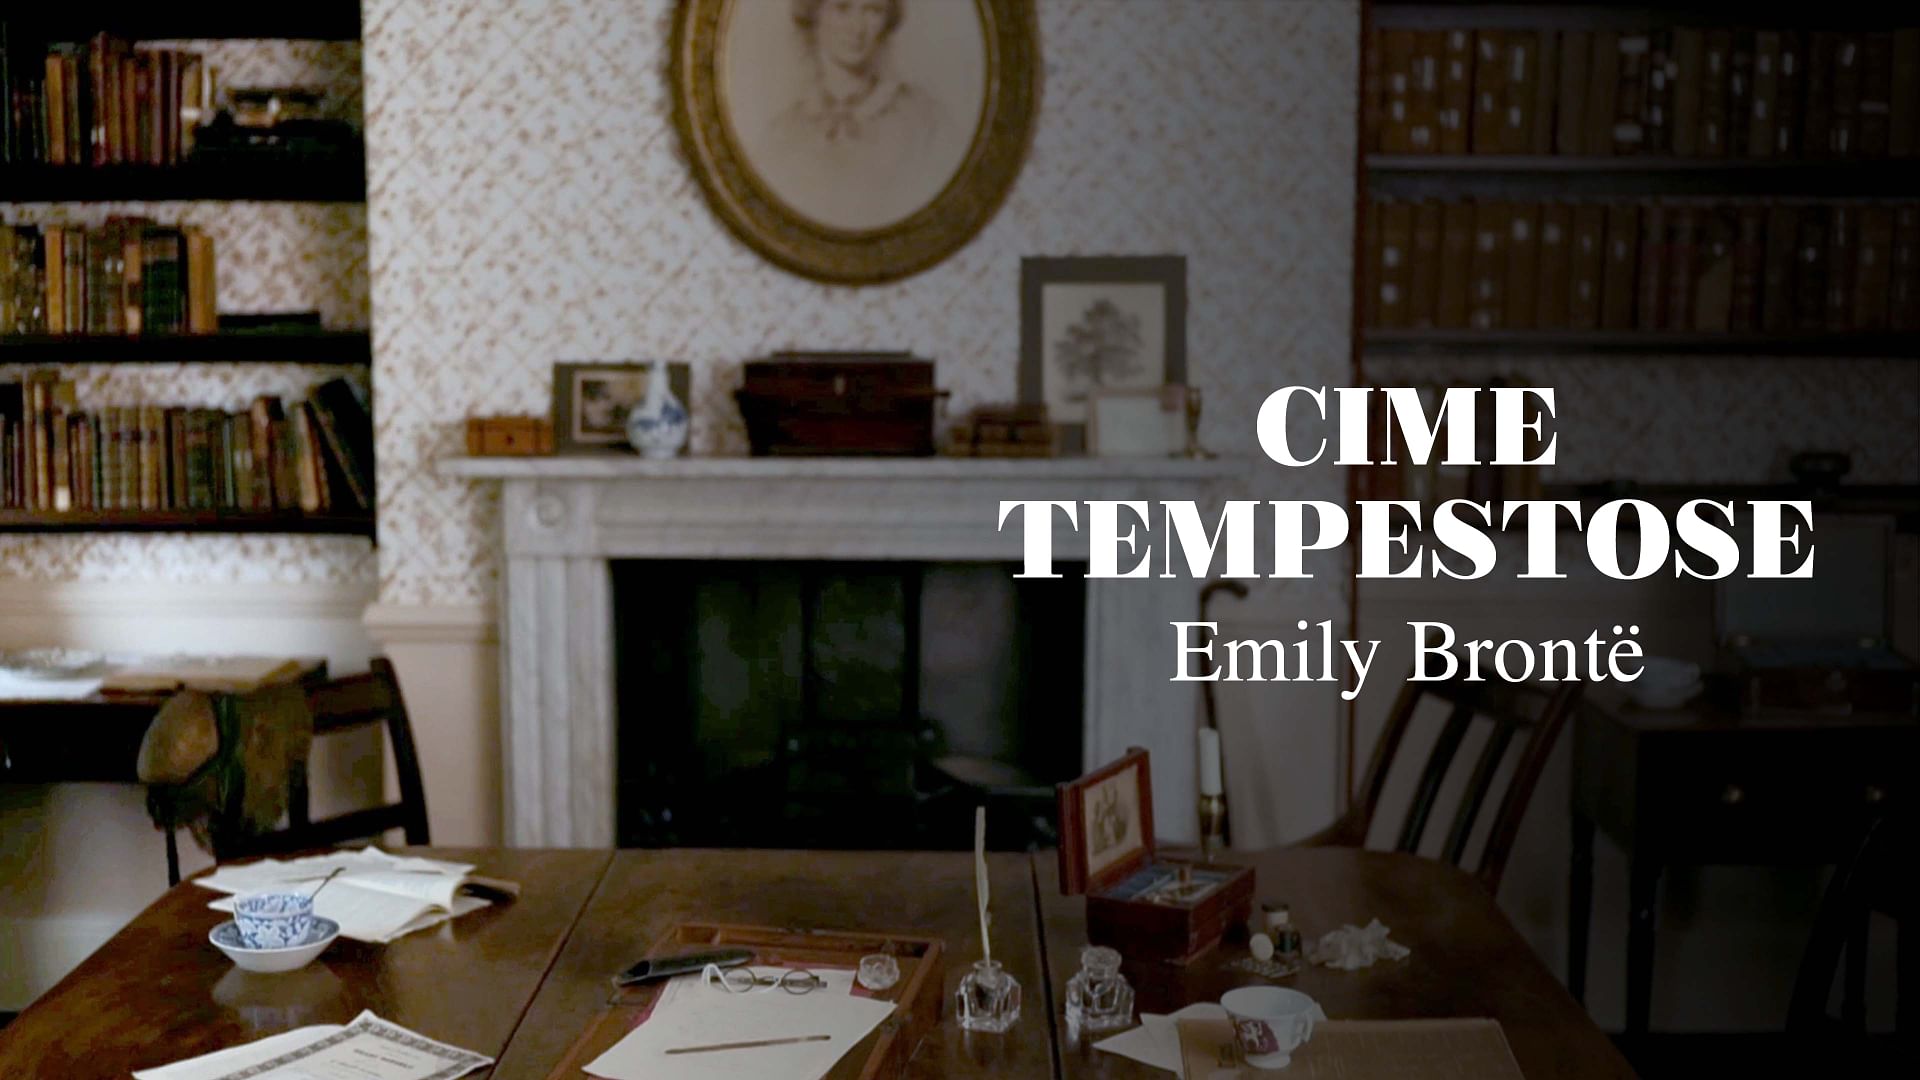 &quot;Cime tempestose&quot; di Emily Brontë: amore e vendetta - Guarda il documentario completo | ARTE in italiano